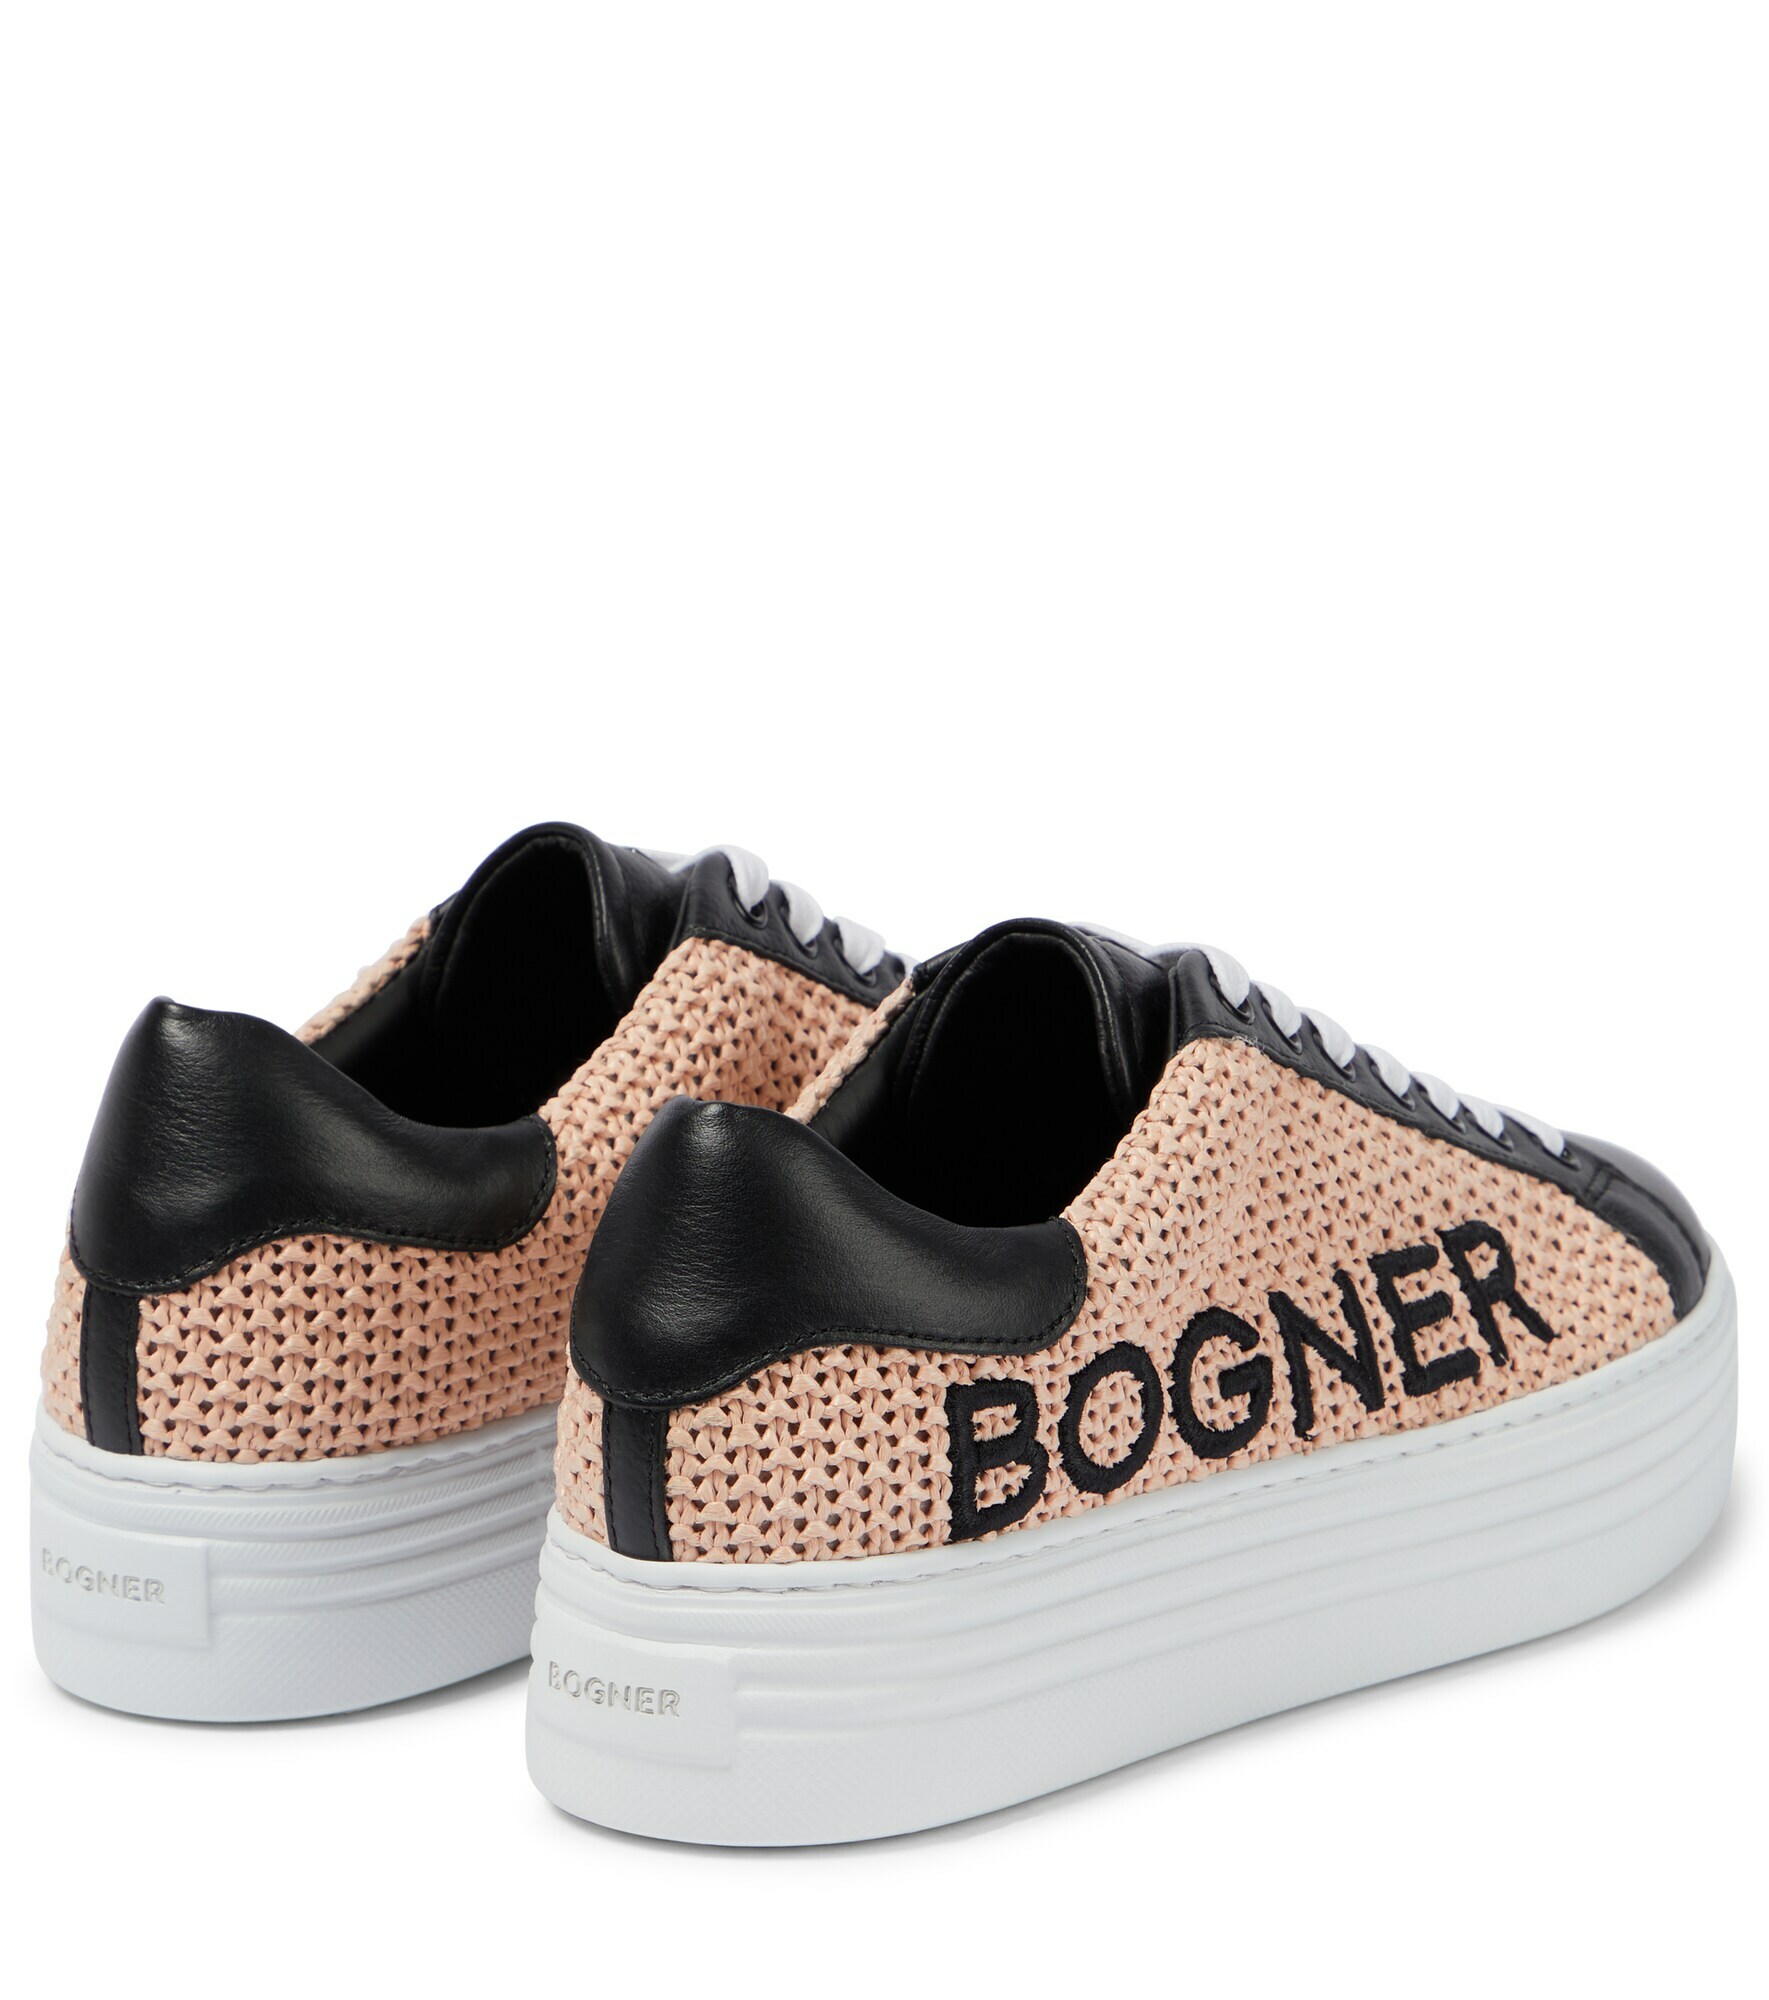 Bogner - Orlando leather-trimmed sneakers Bogner